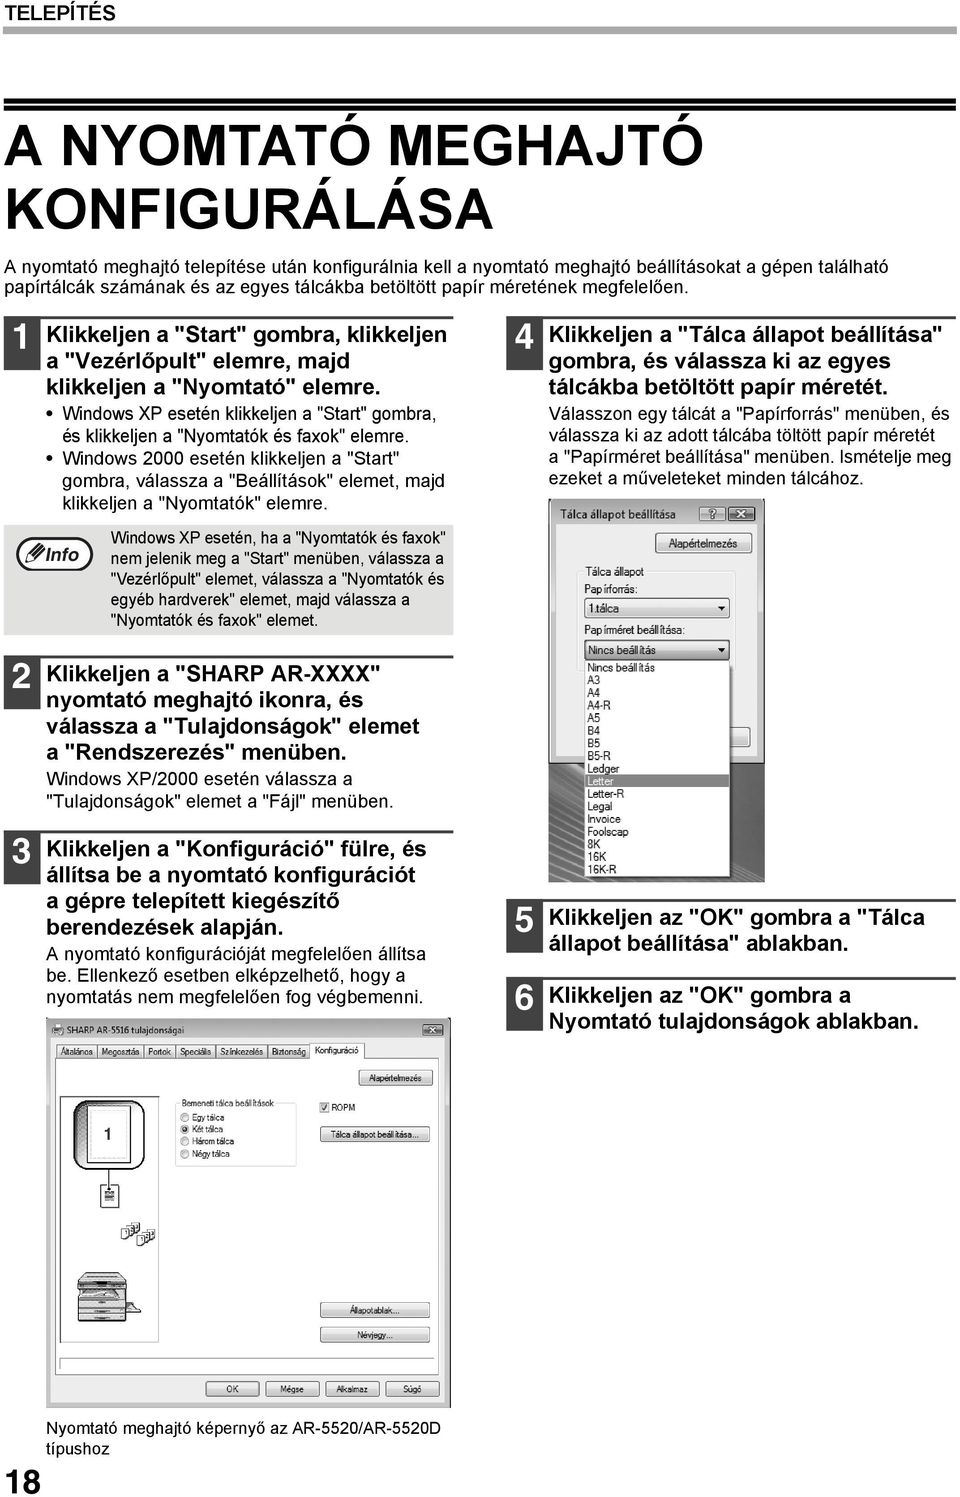 Windows XP esetén klikkeljen a "Start" gombra, és klikkeljen a "Nyomtatók és faxok" elemre.